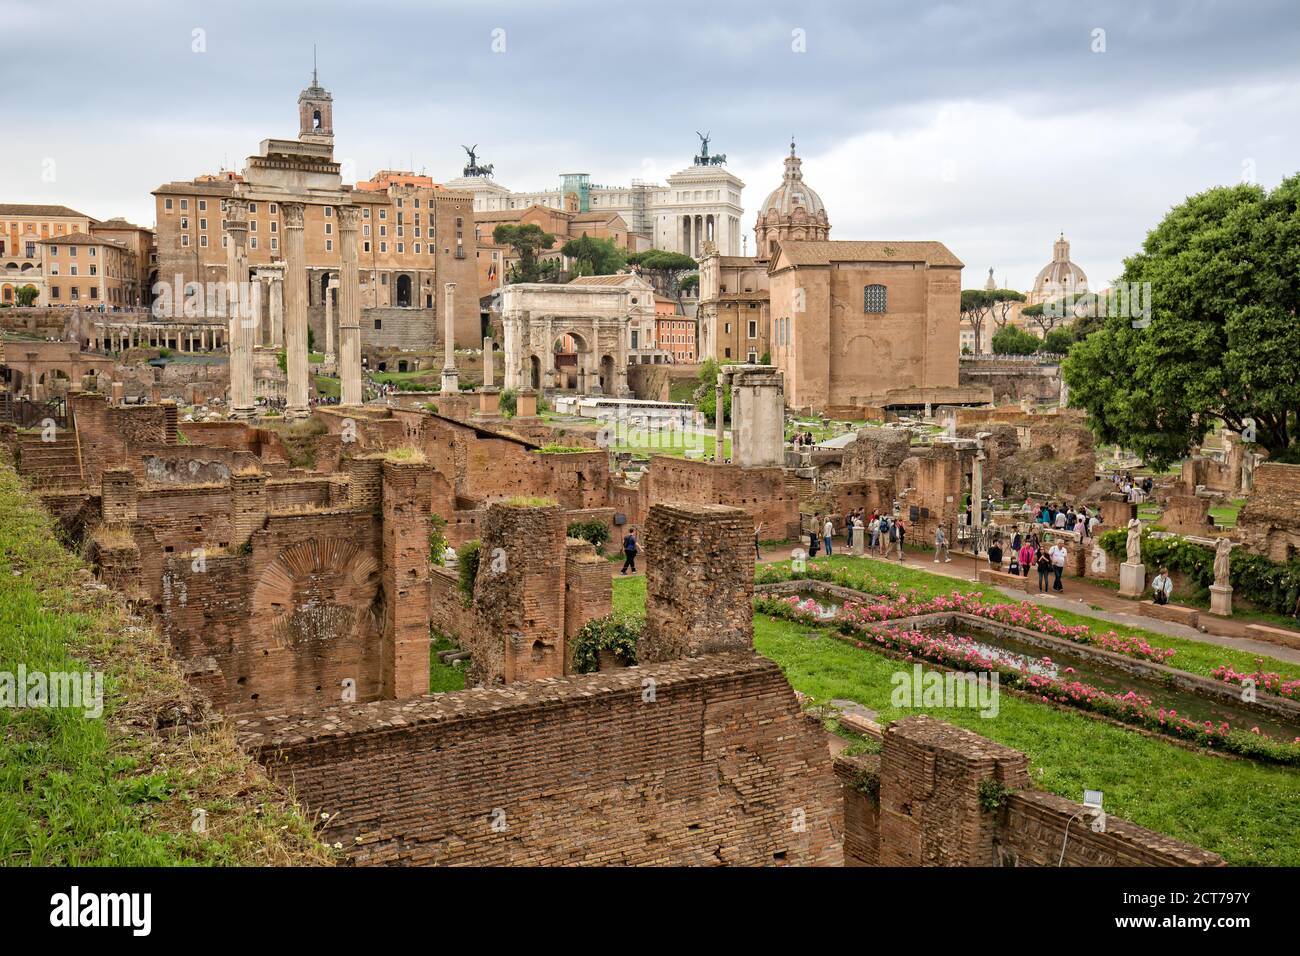 Roma, Italia - 15 de mayo de 2016: Los turistas visitan las antiguas ruinas del Foro Romano en el centro histórico de Roma Foto de stock